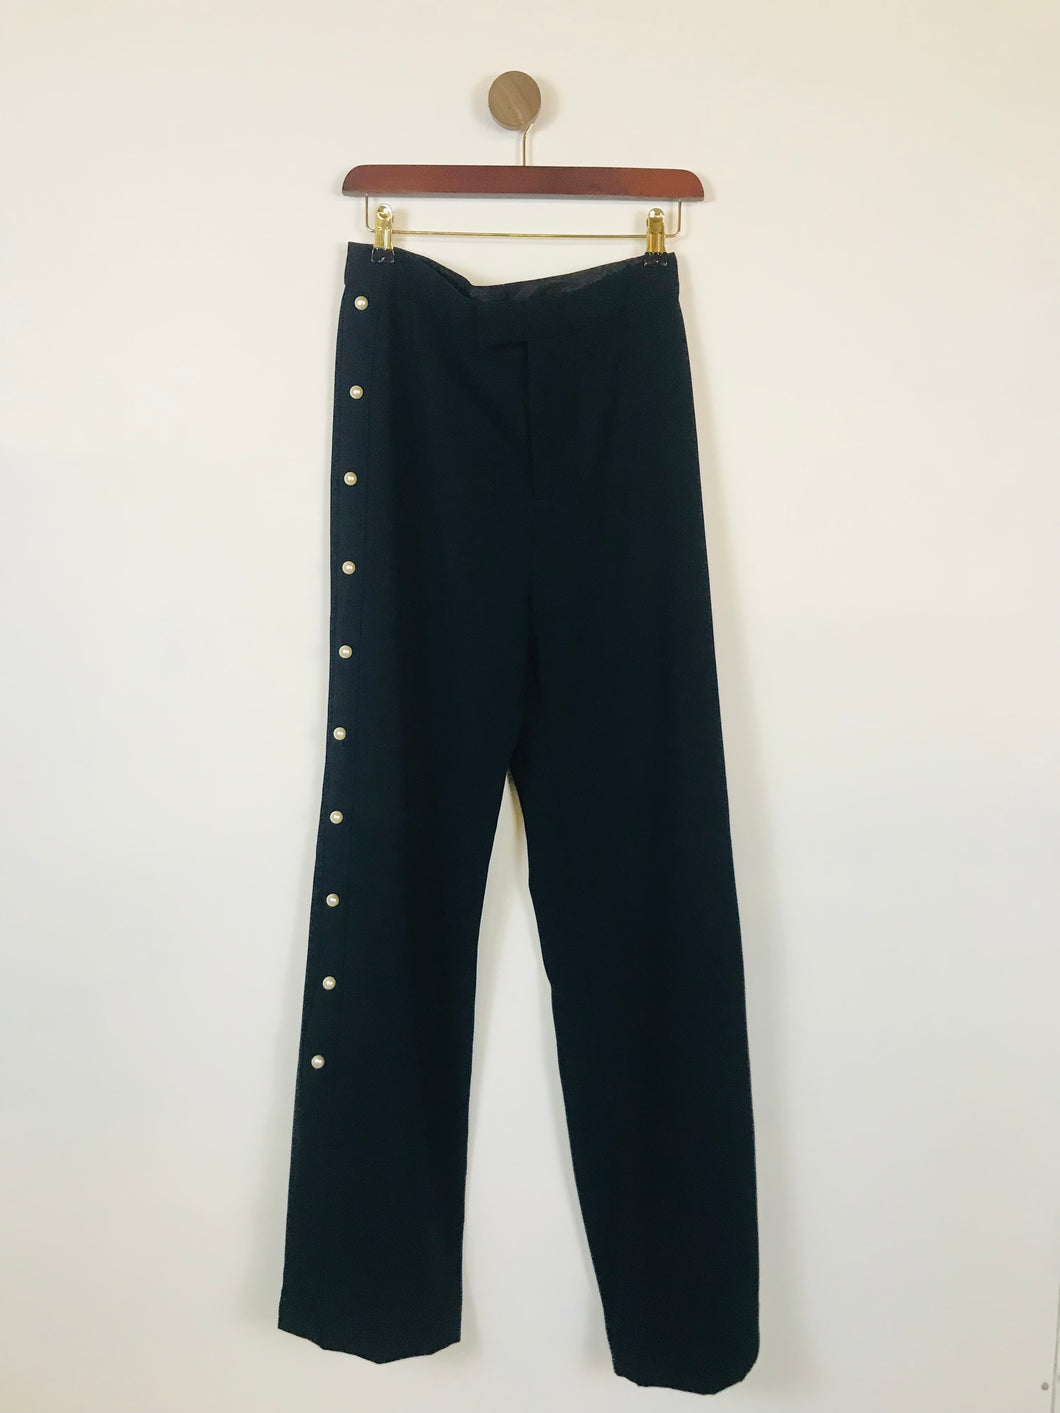 Zara Women's Side Stripe Culottes Trousers | M UK10-12 | Blue